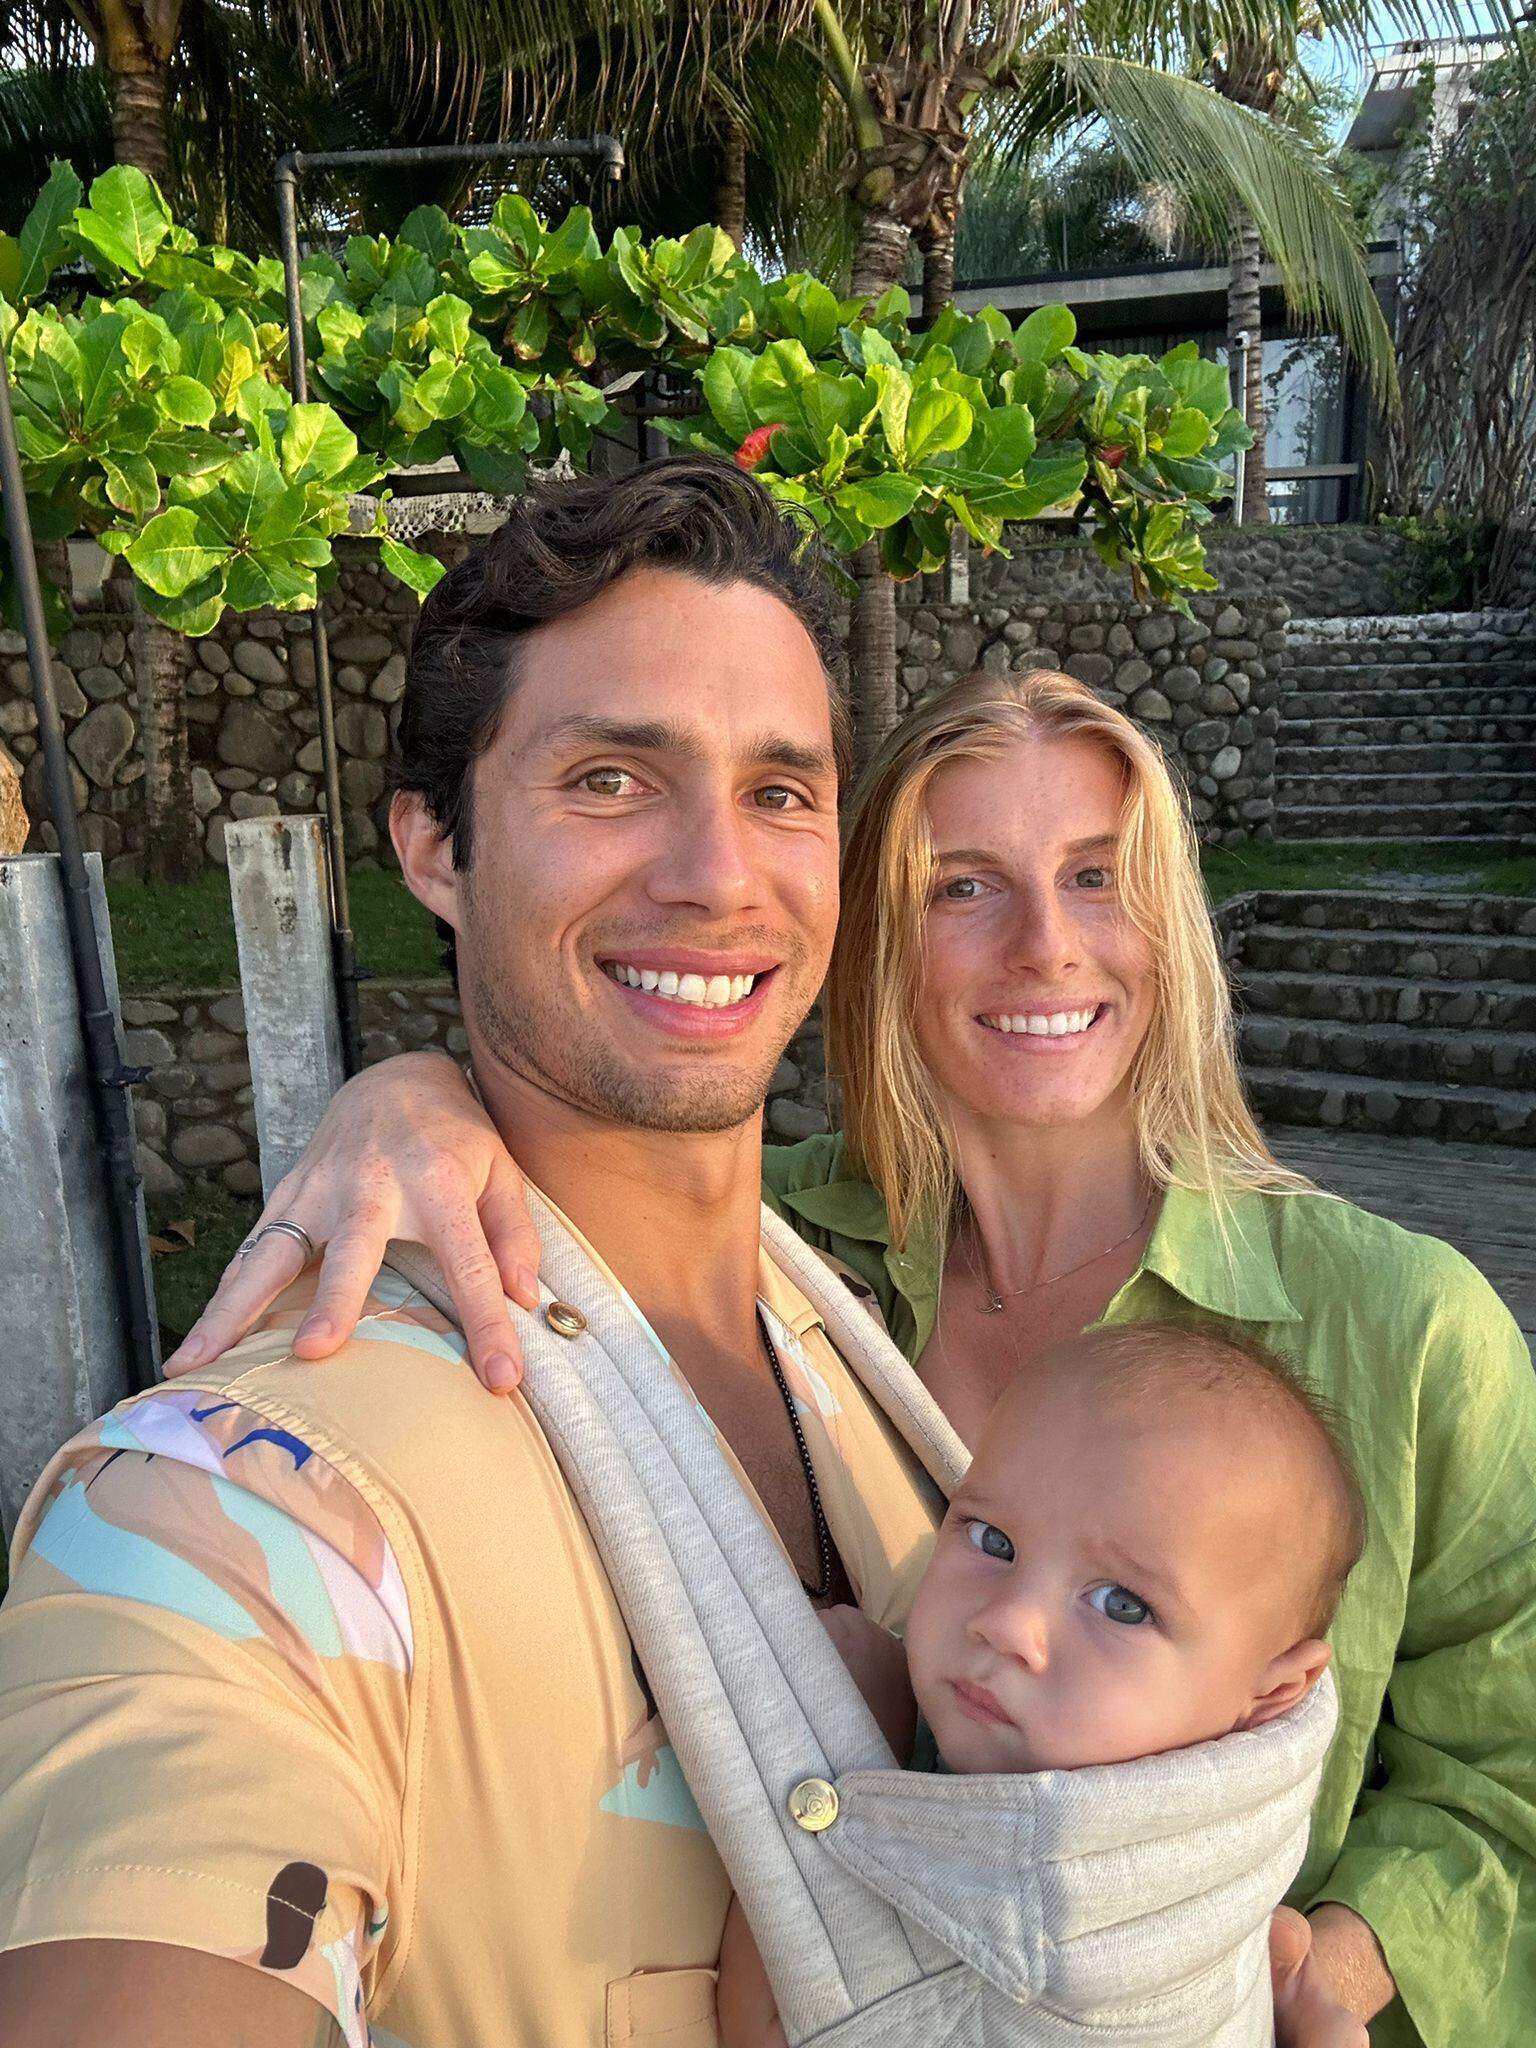 Fernandini en una foto feliz junto a su esposa Abigail y su primer hijo de 11 meses, llamado Luca.